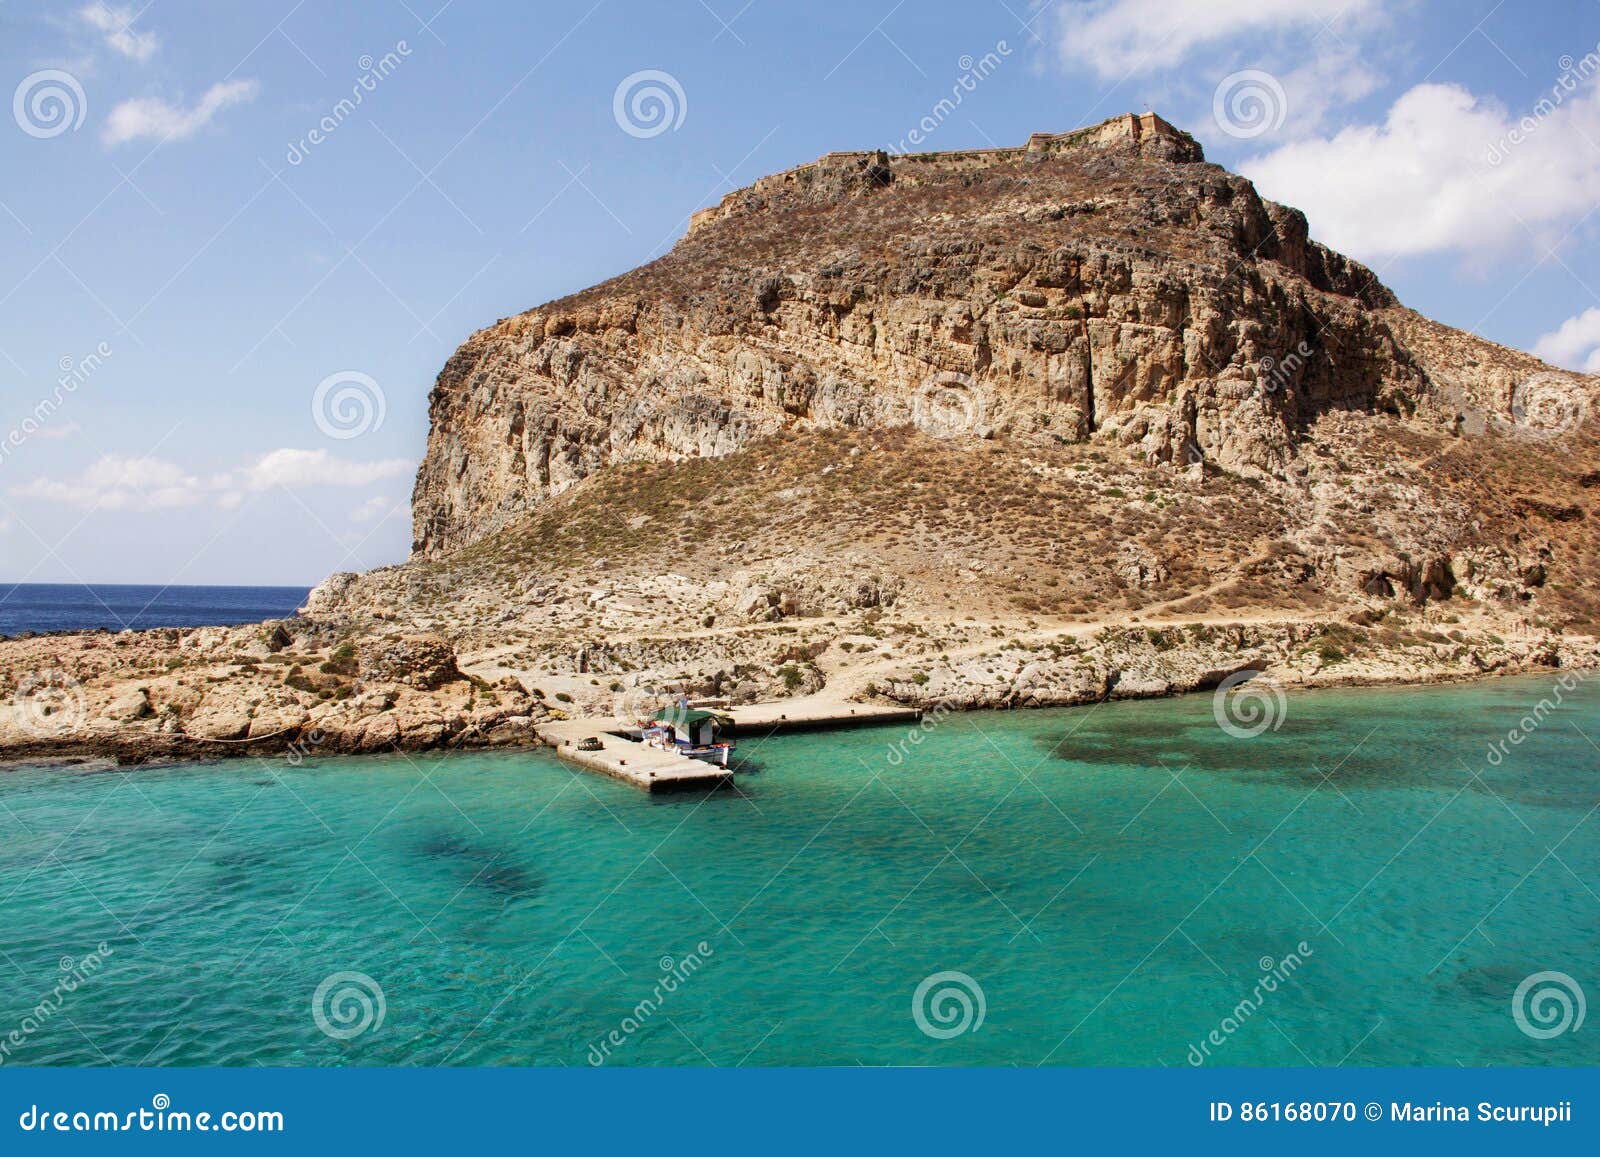 the island gramvousa. crete. greece.